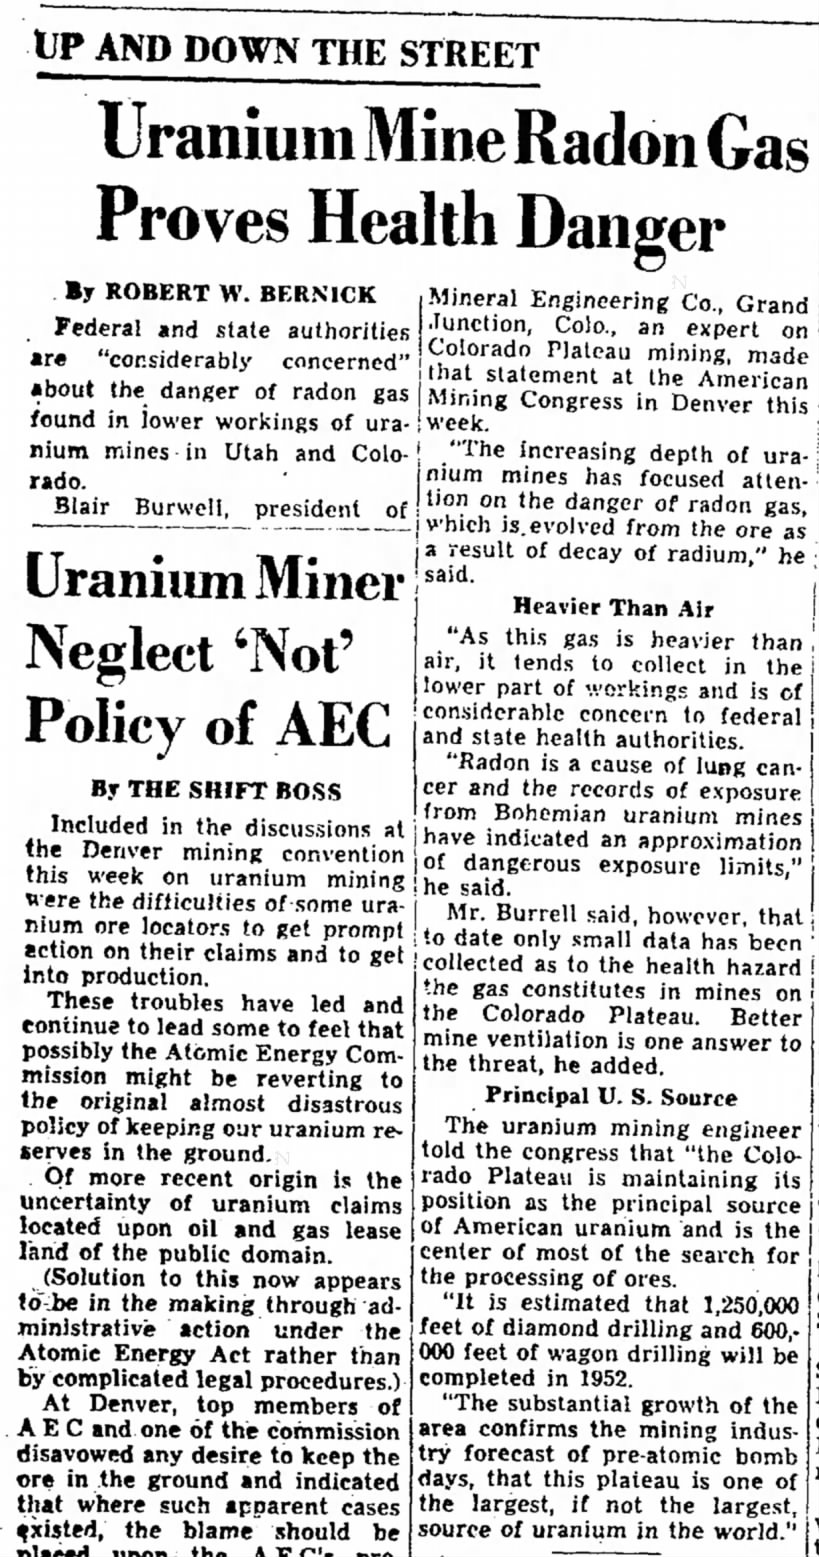 Uranium mine radon gas proves health danger (1952)